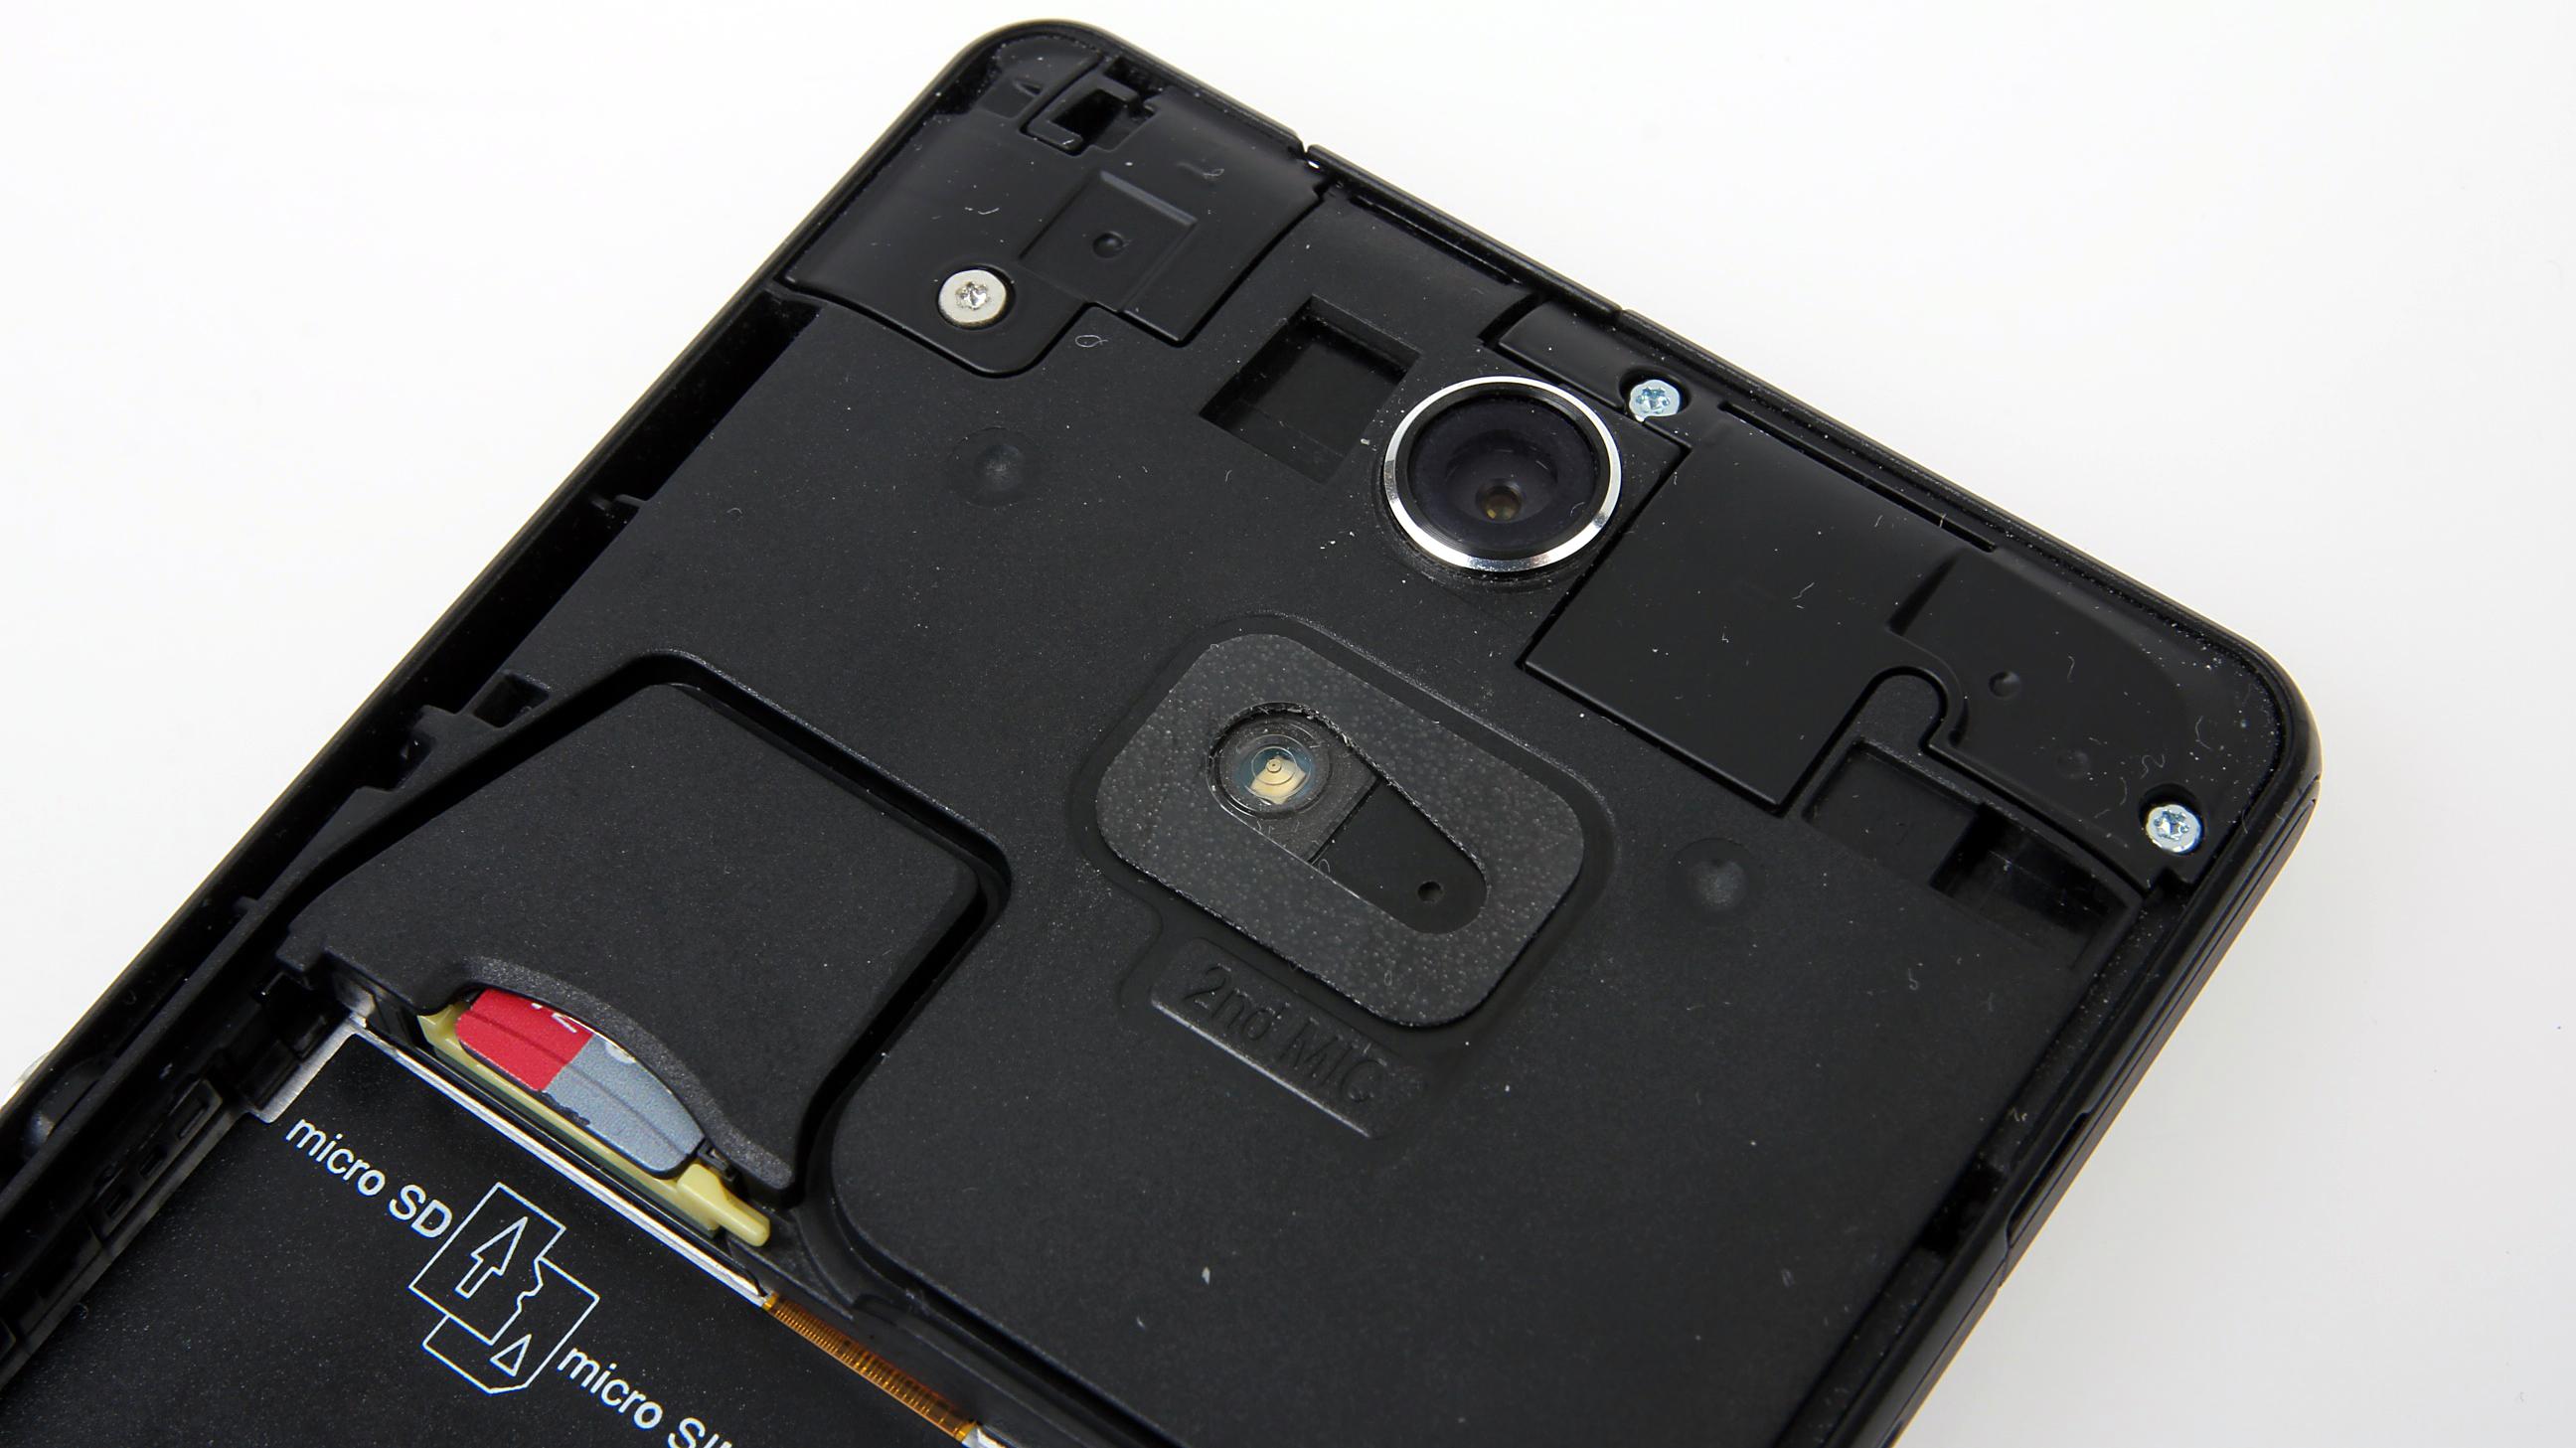 Under batteridekselet er det plass til et MicroSD-kort og SIM-kortet.Foto: Kurt Lekanger, Amobil.no